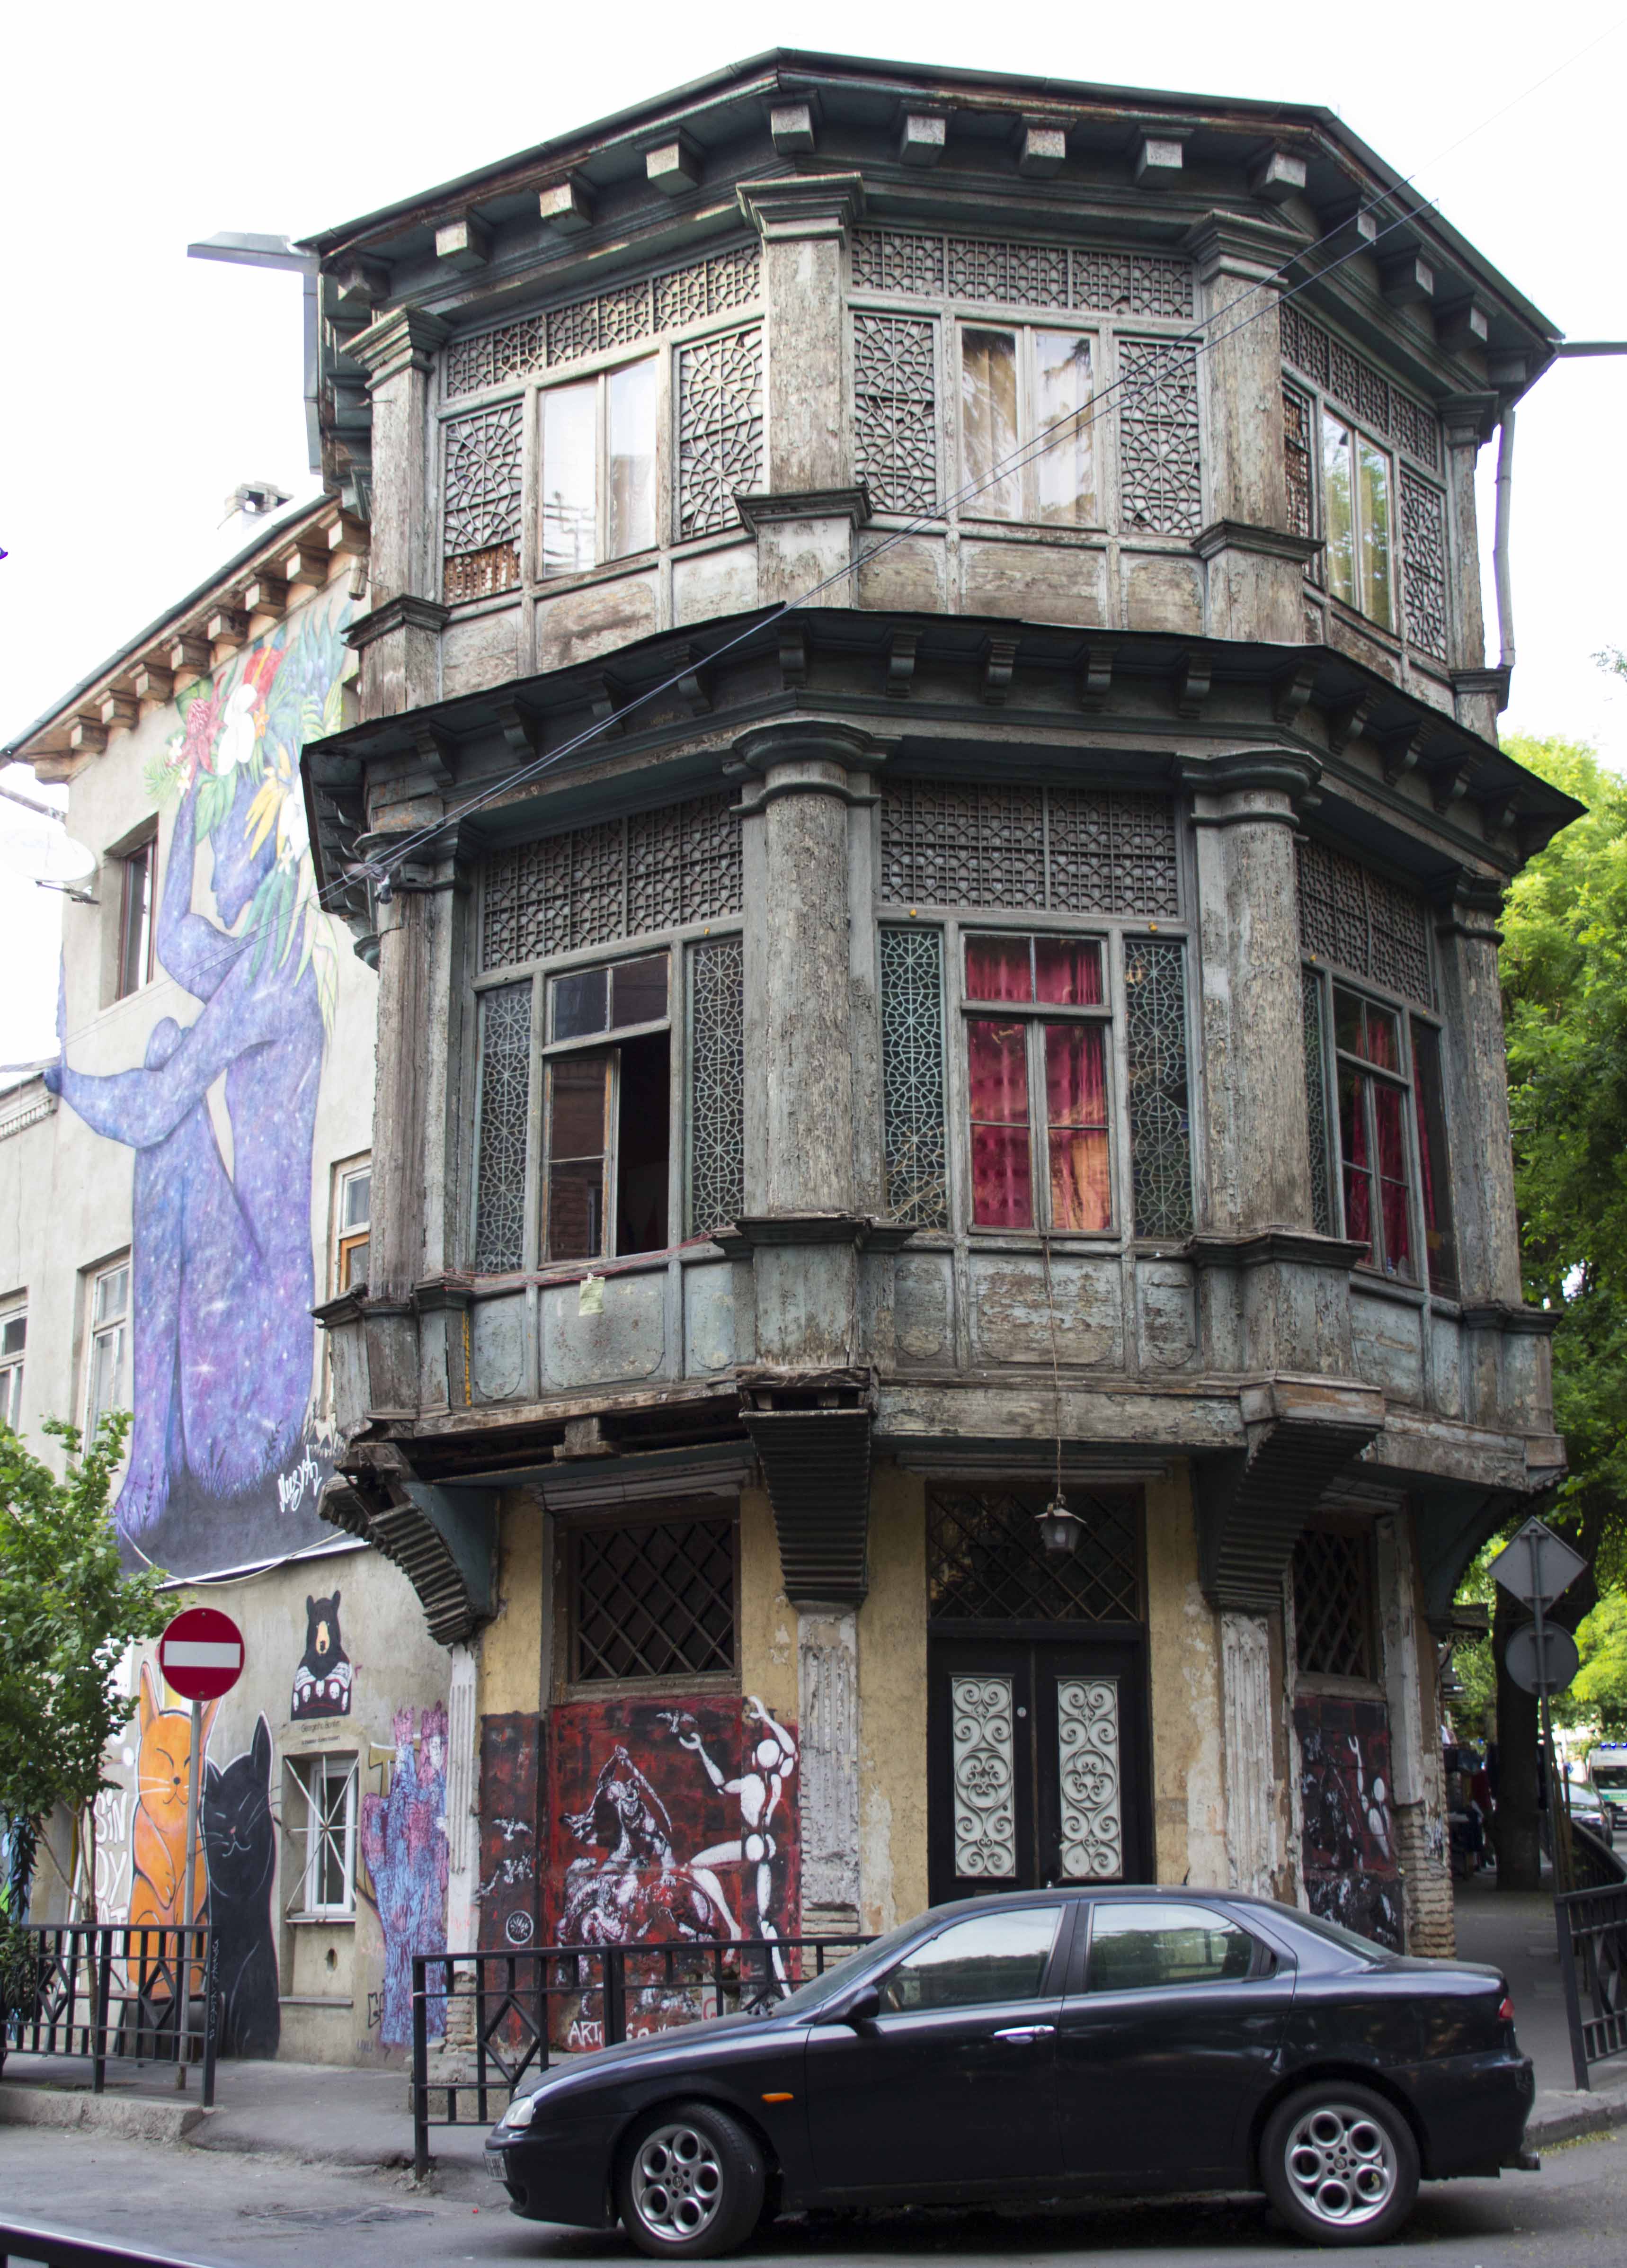 Typische Architektur in Tiflis